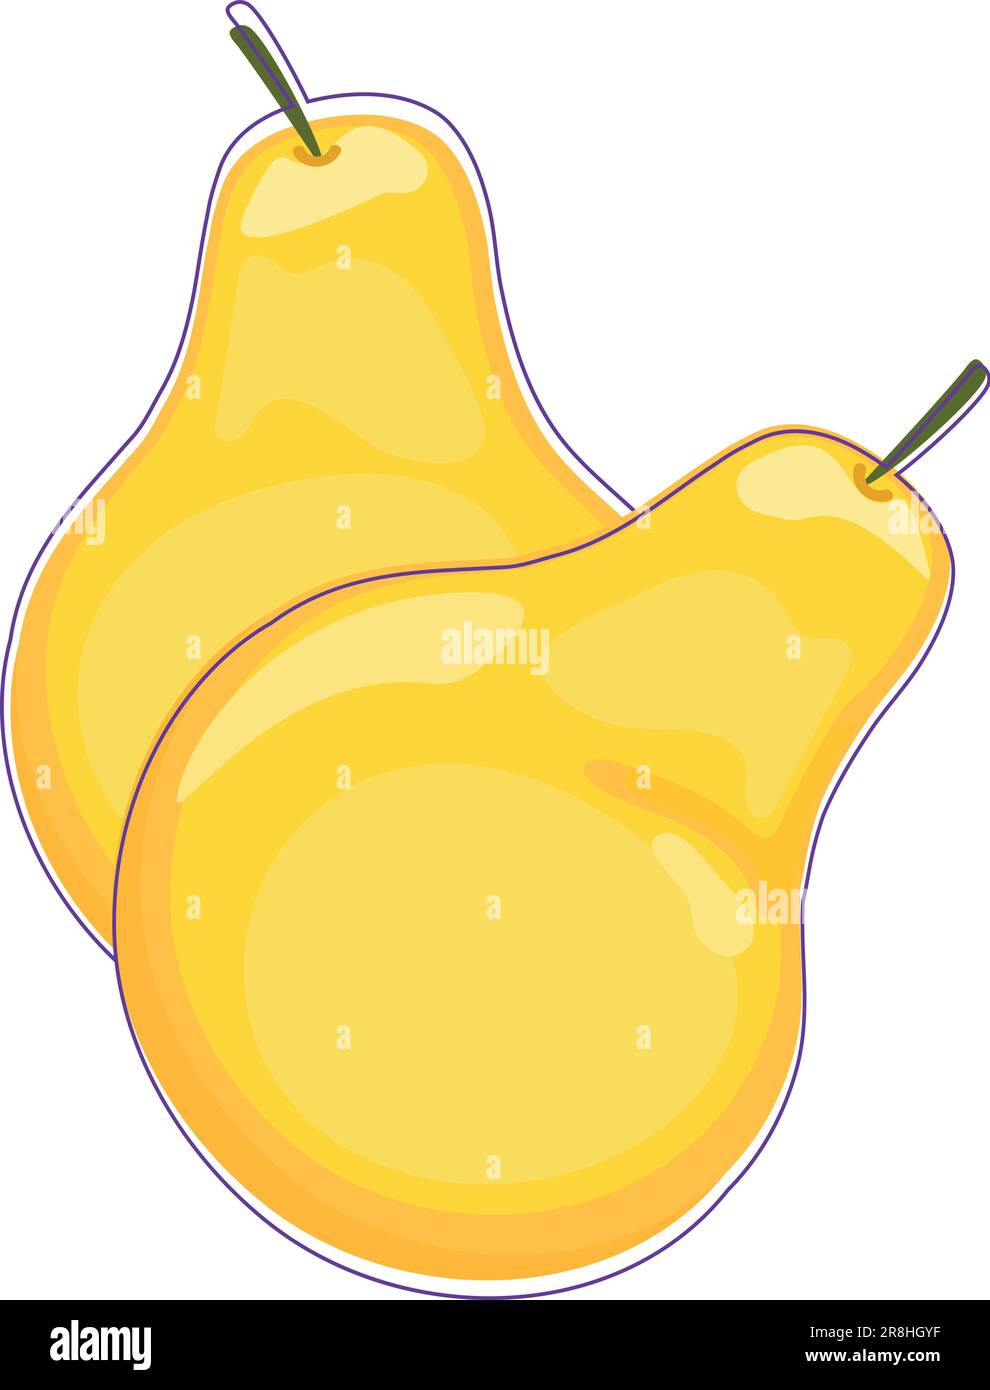 Due pere gialle isolate su fondo bianco. Illustrazione vettoriale Illustrazione Vettoriale